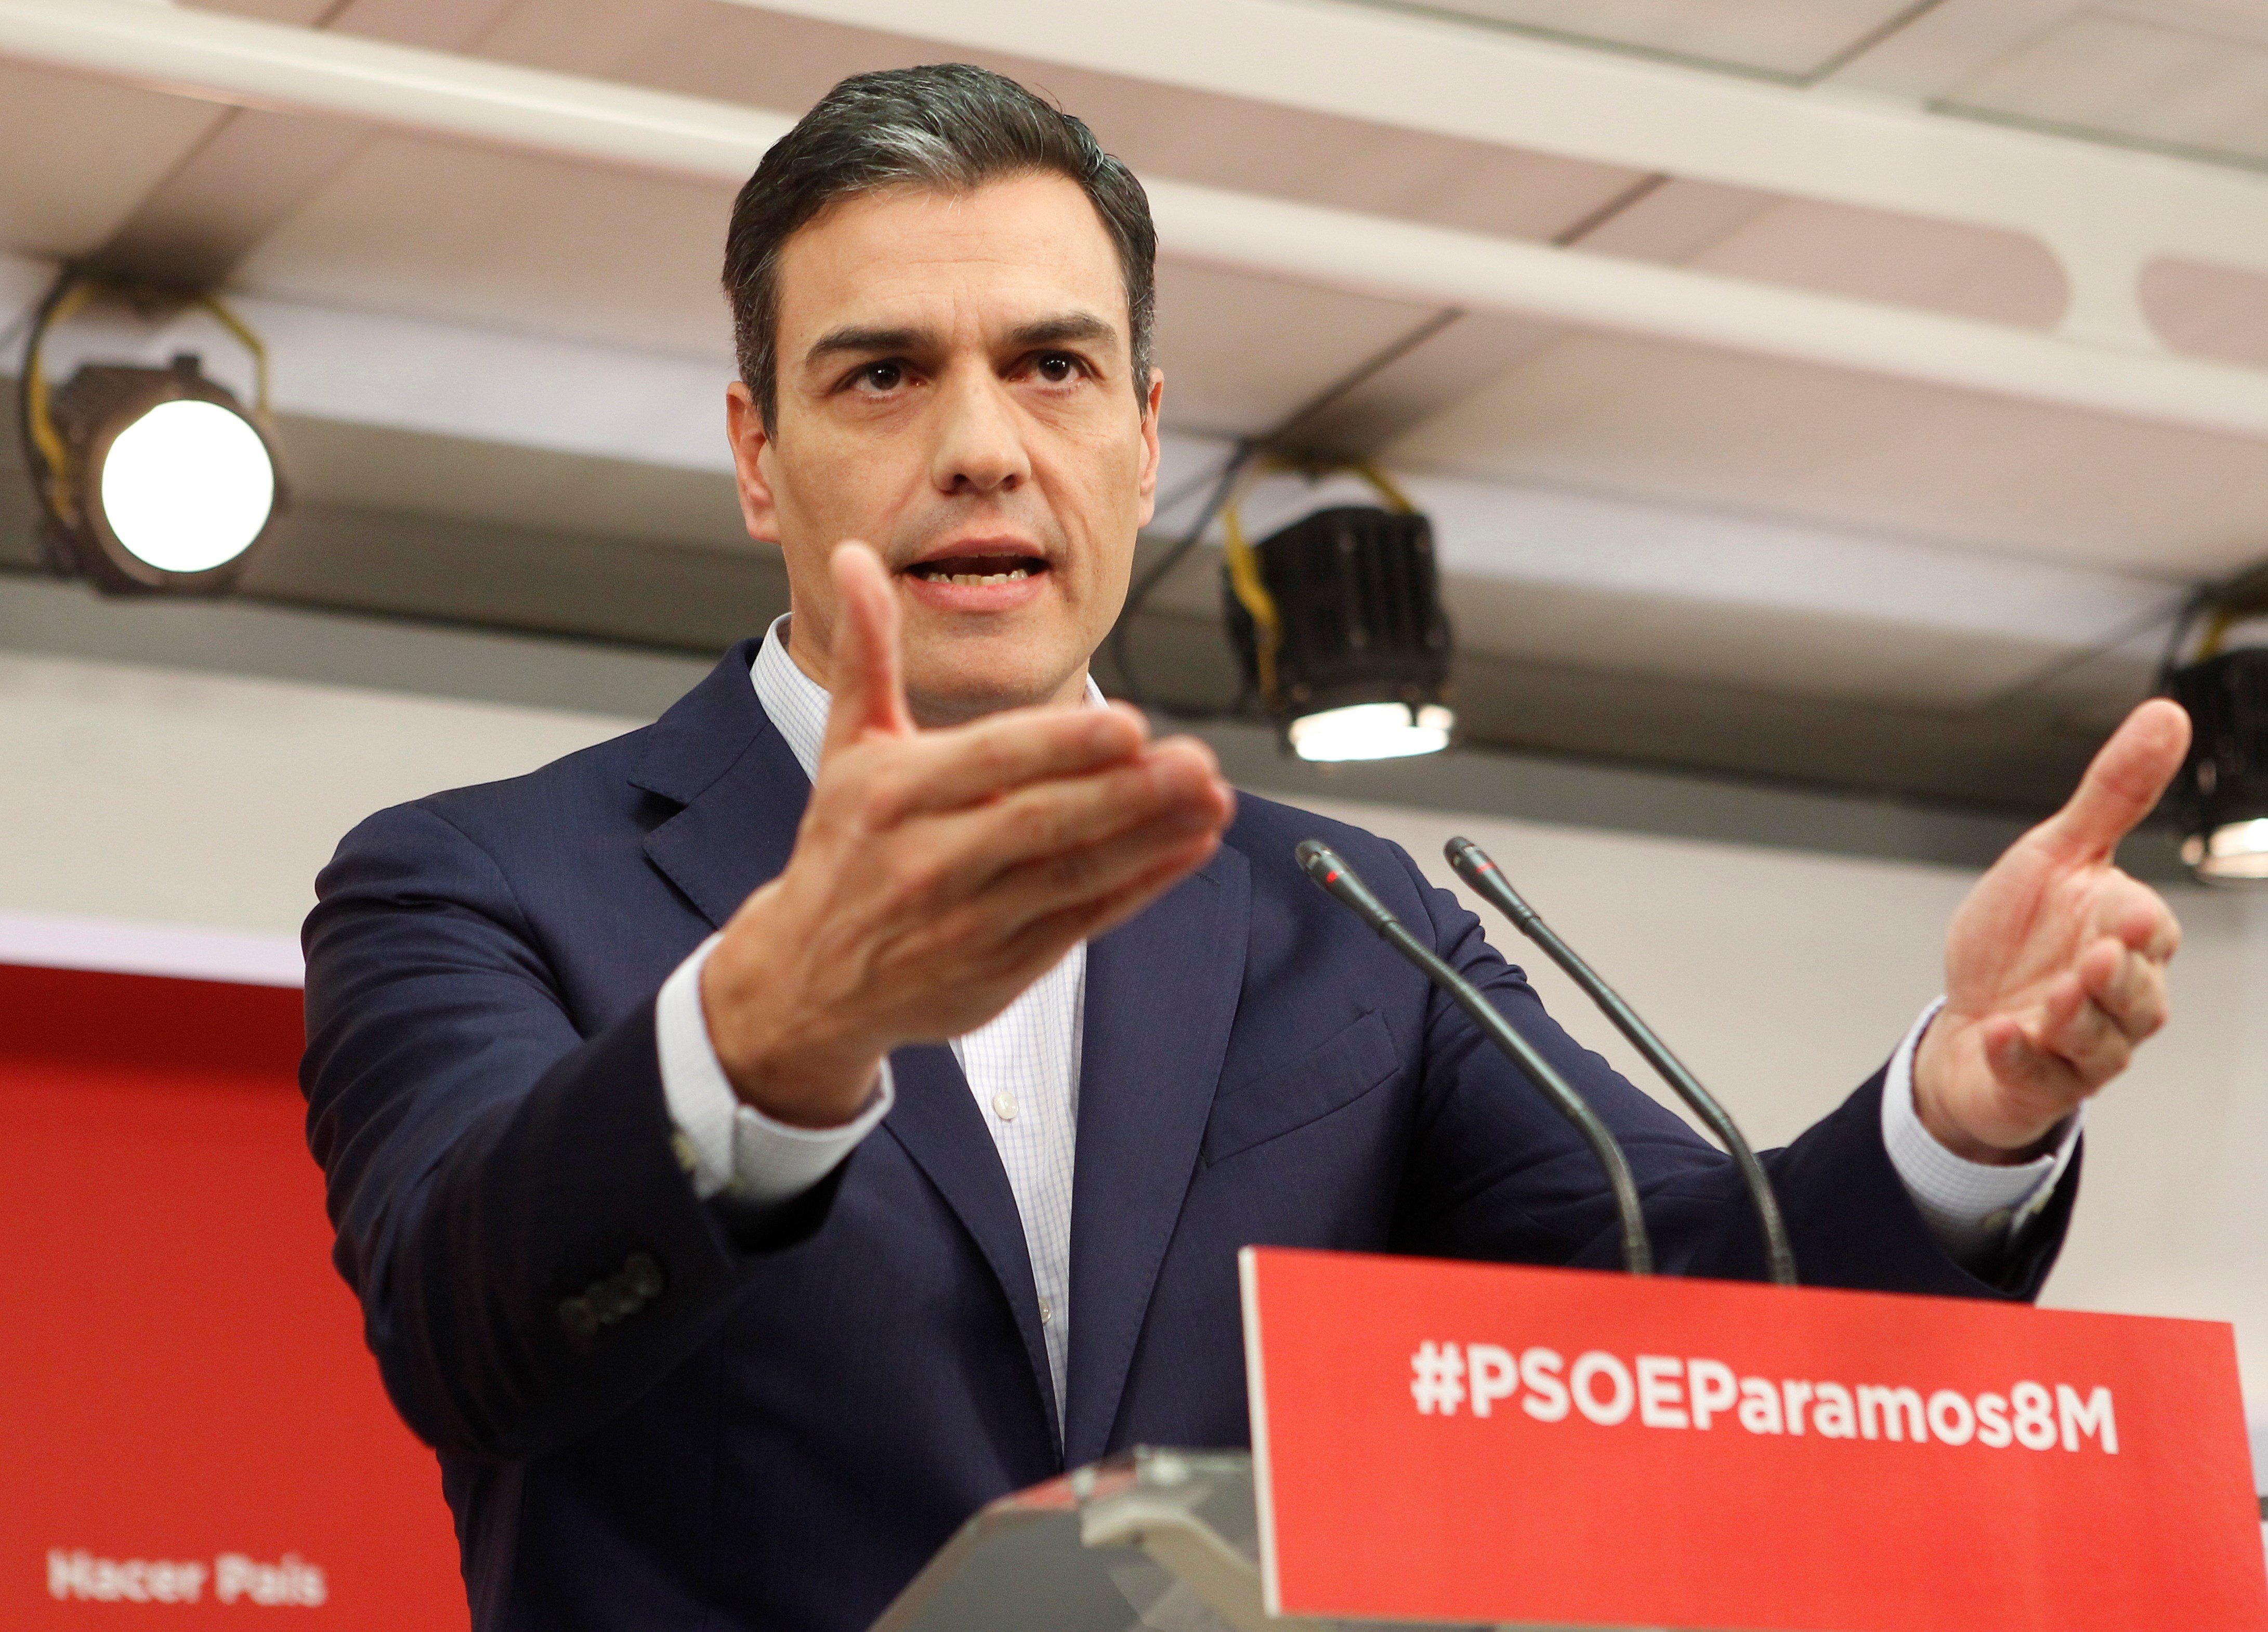 Pedro Sánchez justifica el arresto de Puigdemont: "Nadie está por encima de la ley"